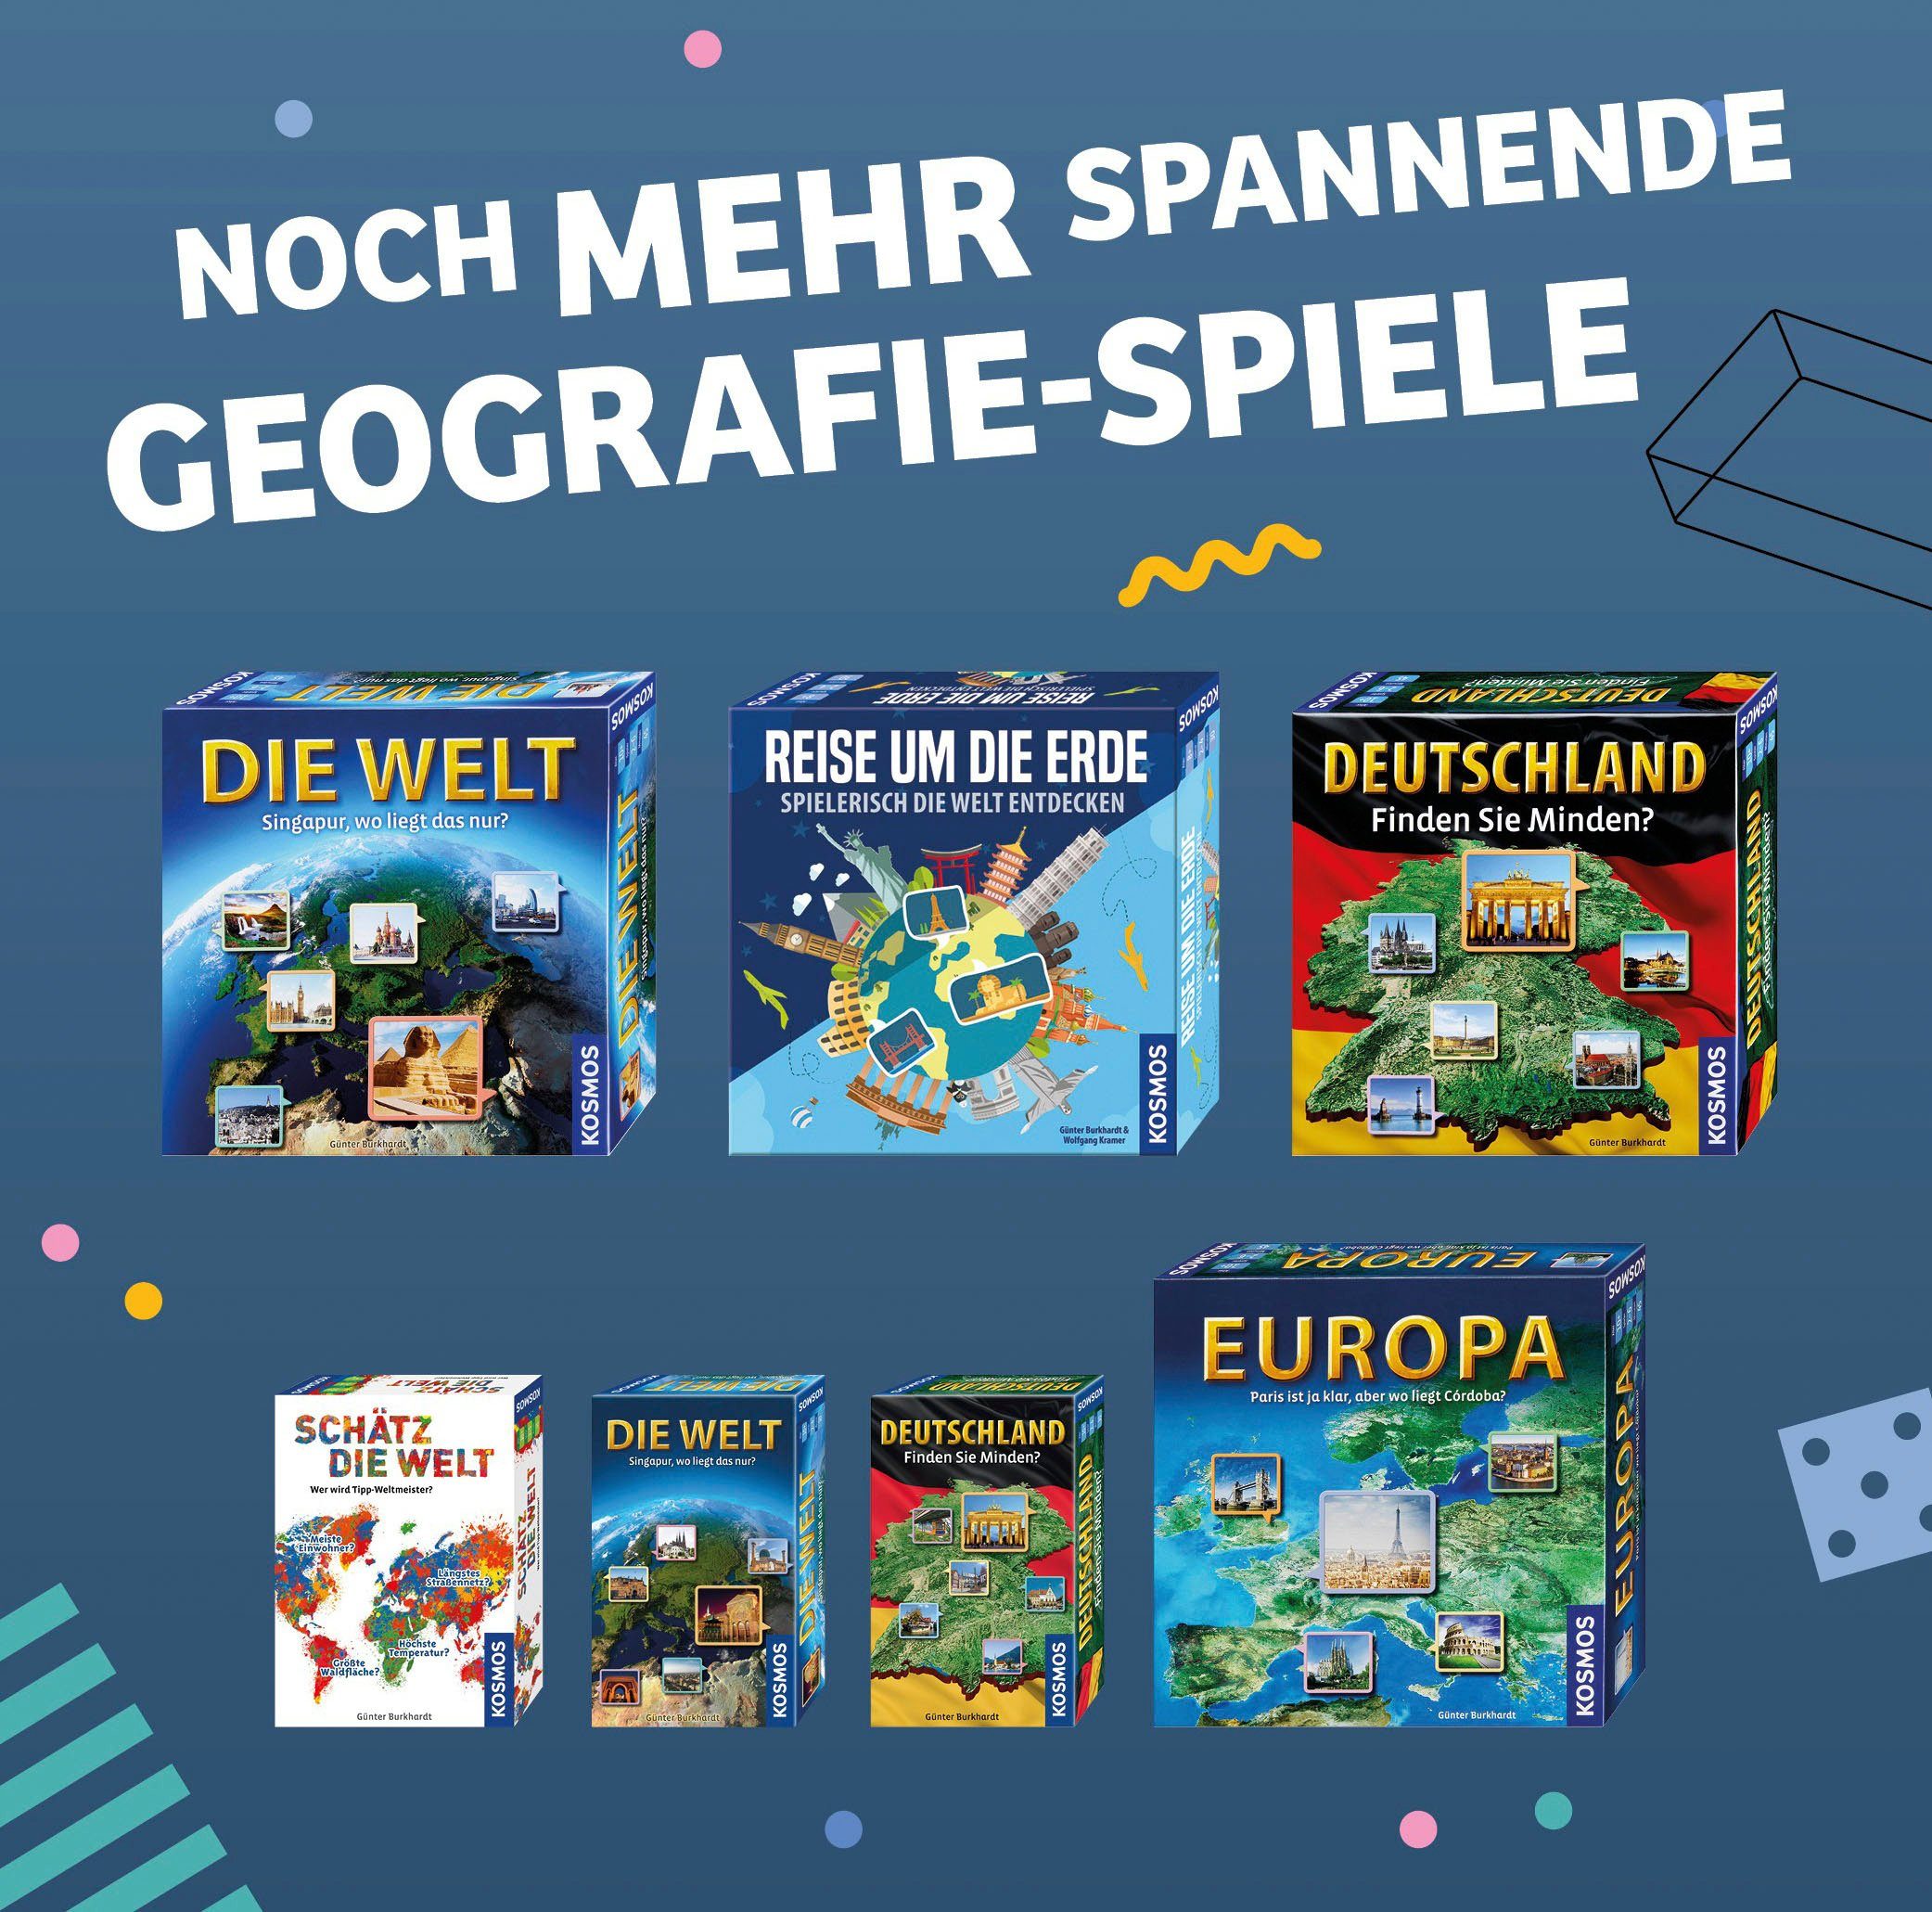 Kosmos Spiel, Germany Made Schätz die in Brettspiel Welt